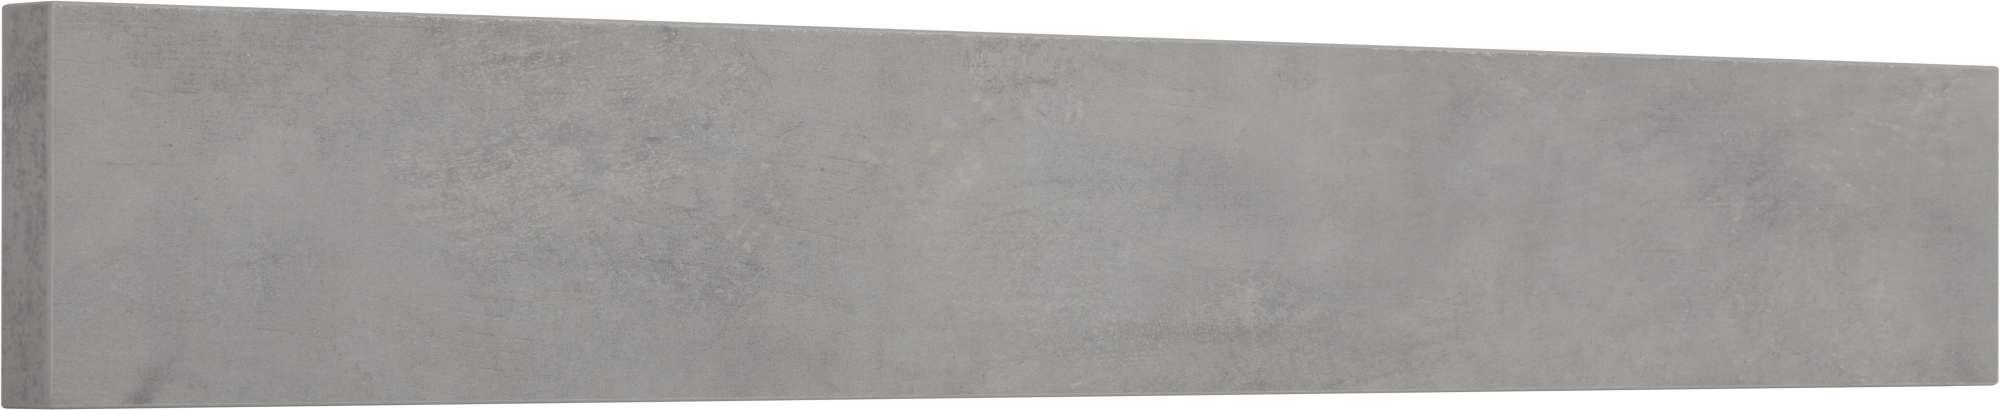 Frente de cajón de cocina atenas cemento claro h 12.8 x l 90 cm